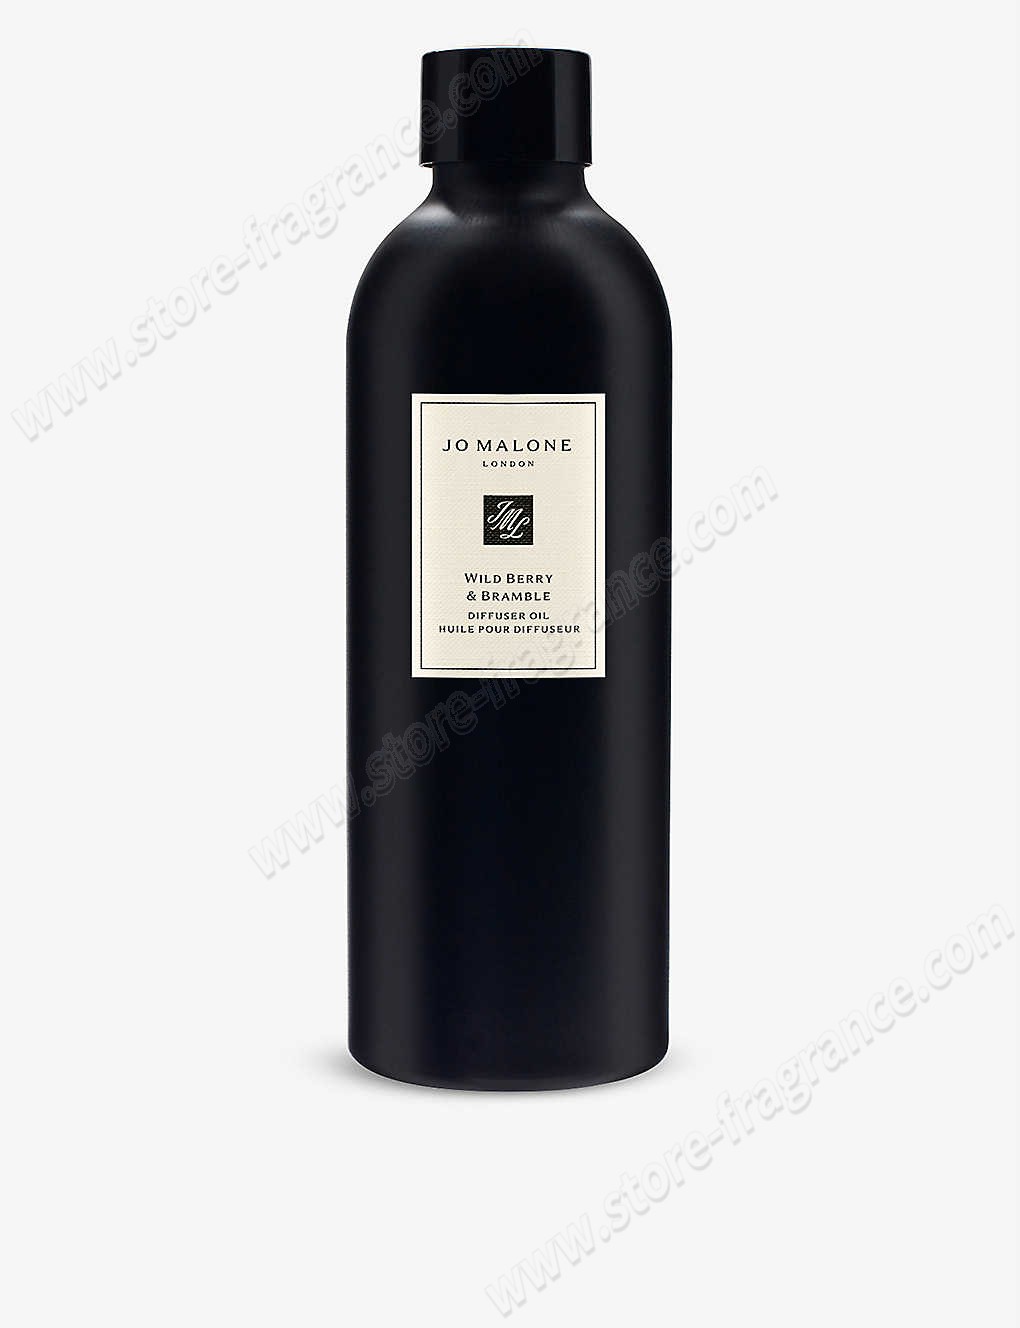 JO MALONE LONDON/Wild Berry & Bramble diffuser refill 350ml ✿ Discount Store - -0